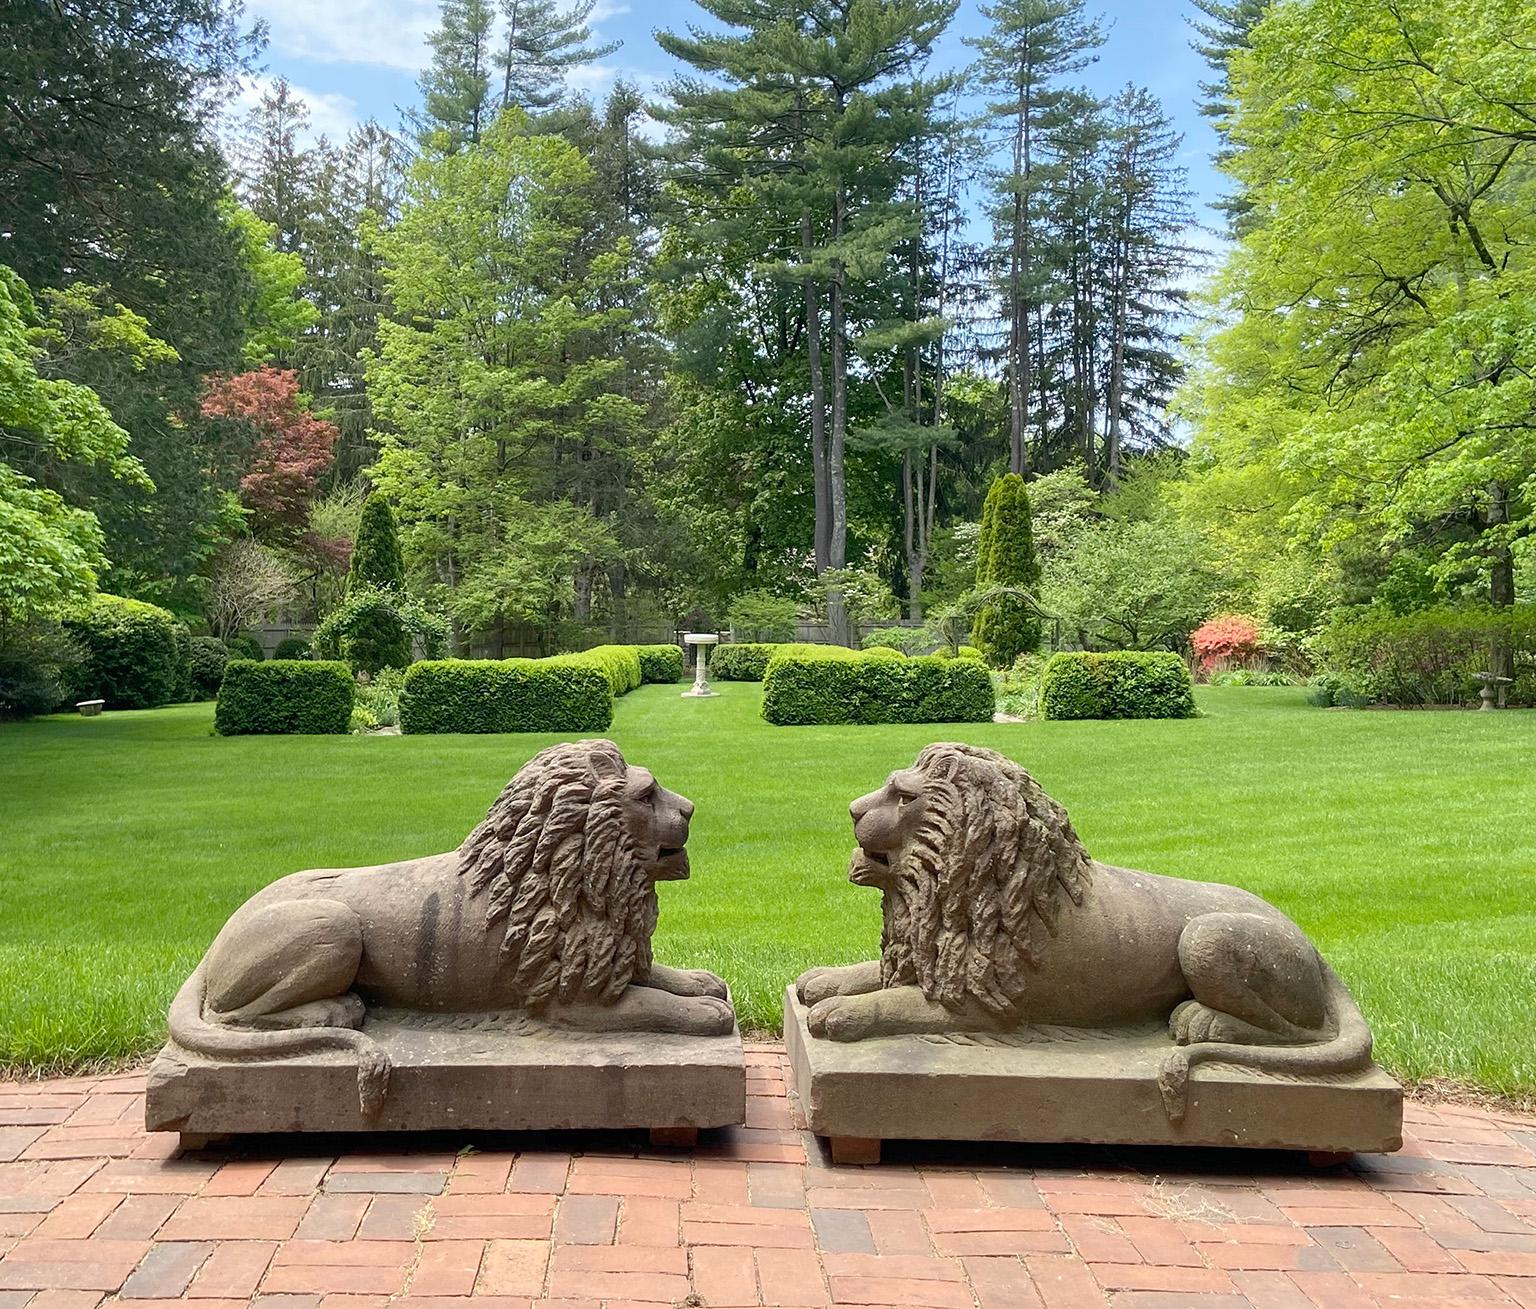 Rare paire de lions sculptés en pierre brune de l'art populaire américain, en position couchée, avec des crinières et des queues complètes enroulées sur les côtés opposés, leurs visages expressifs avec des bouches légèrement ouvertes, accentués par